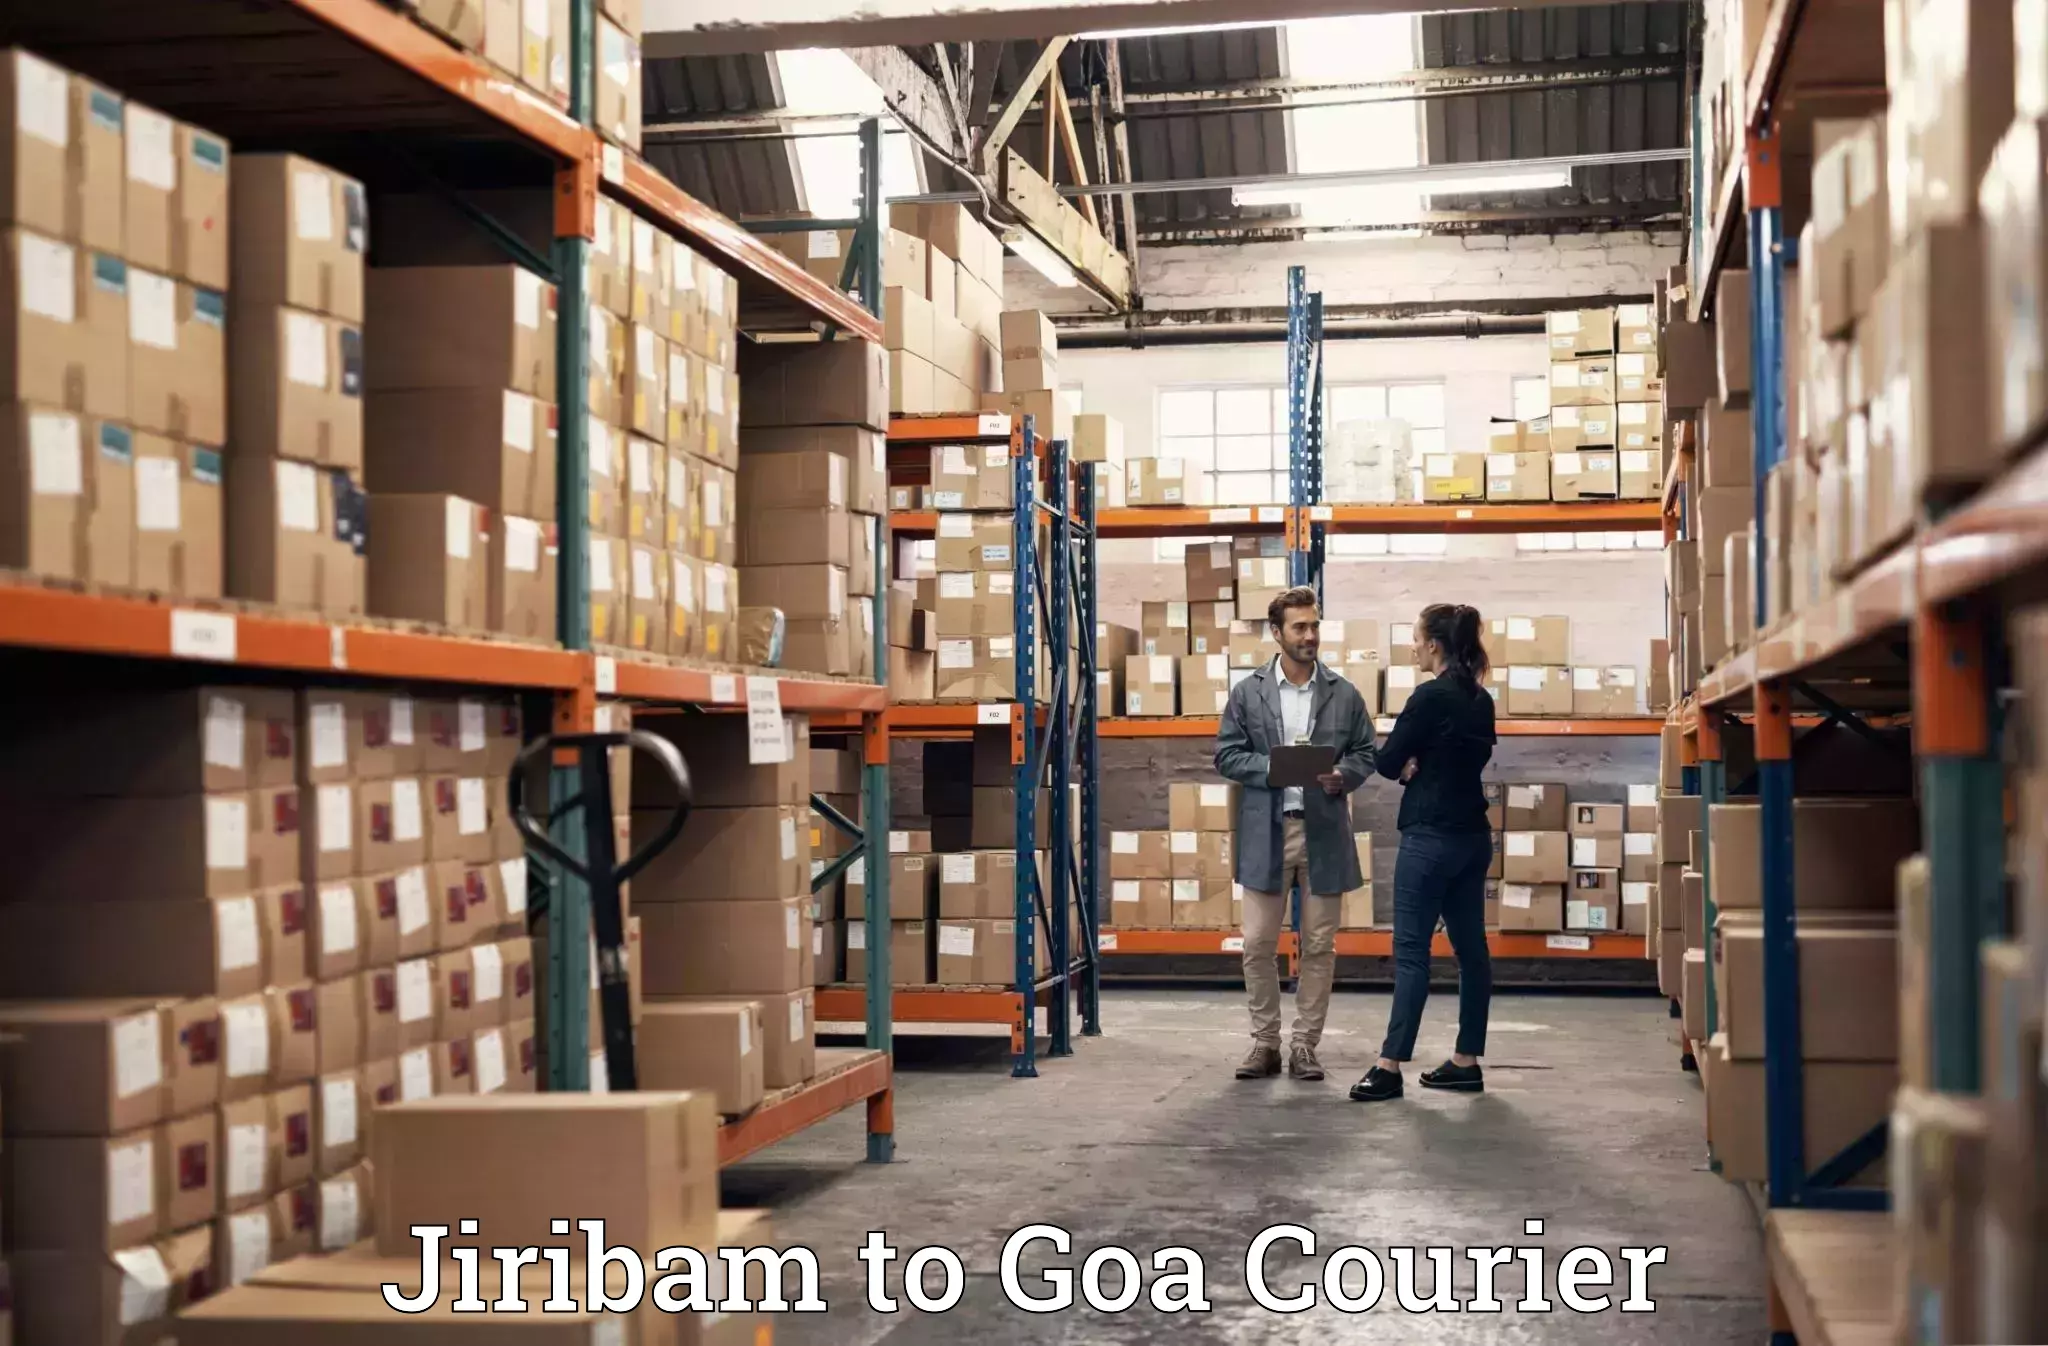 Luggage transit service Jiribam to Goa University